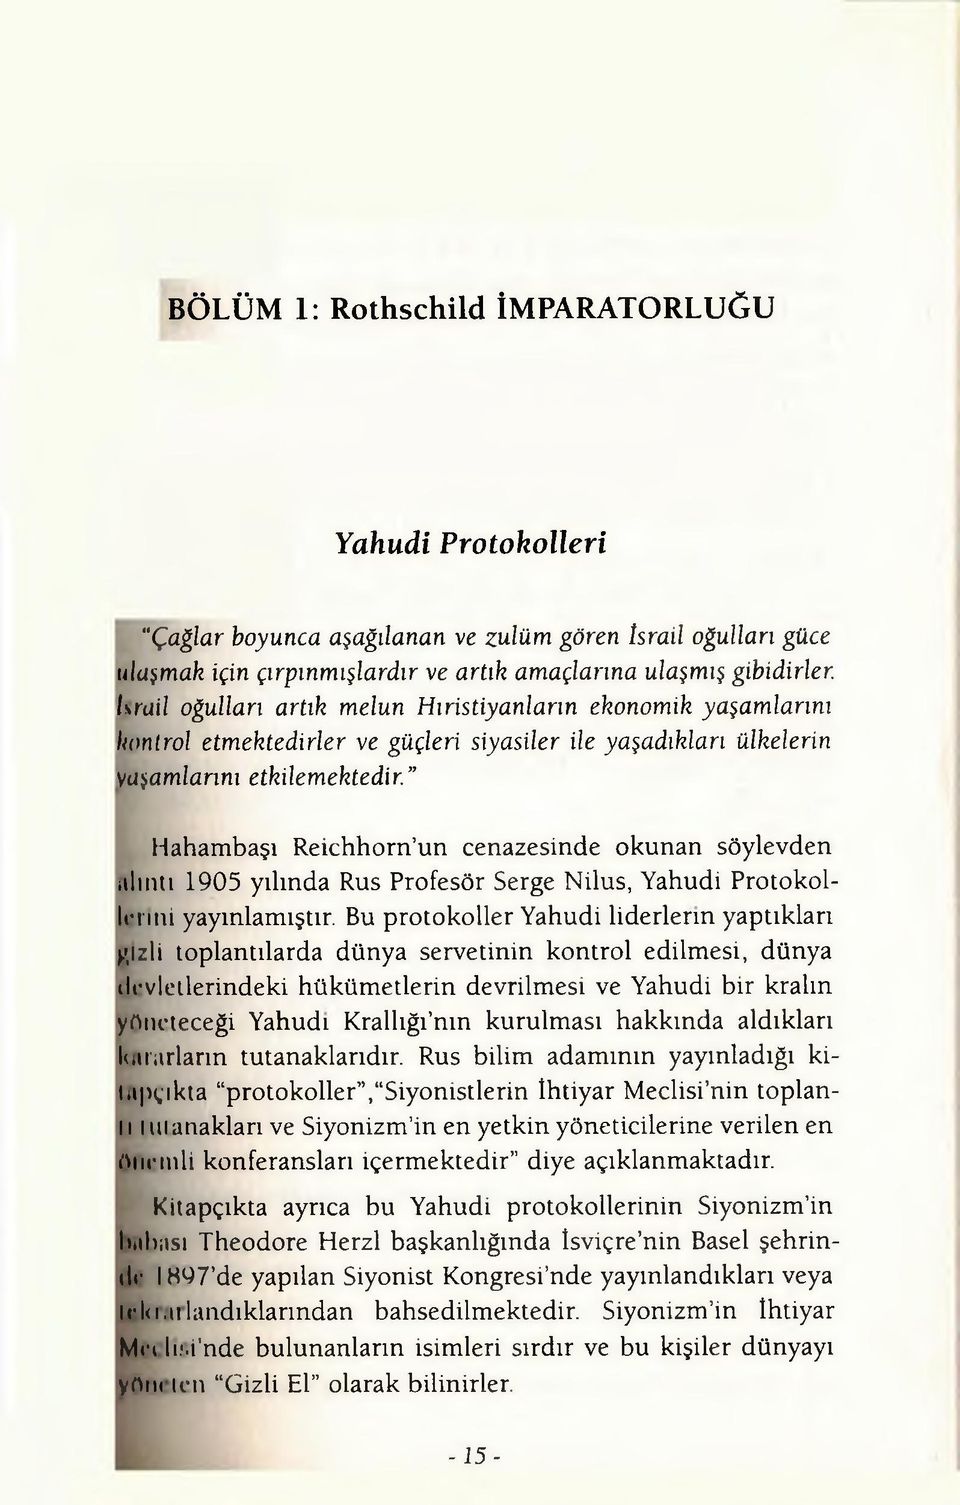 Hahambaşı Reichhorn un cenazesinde okunan söylevden alıntı 1905 yılında Rus Profesör Serge Nilus, Yahudi Protokollerini yayınlamıştır. Bu protokoller Yahudi liderlerin yaptıkları >.